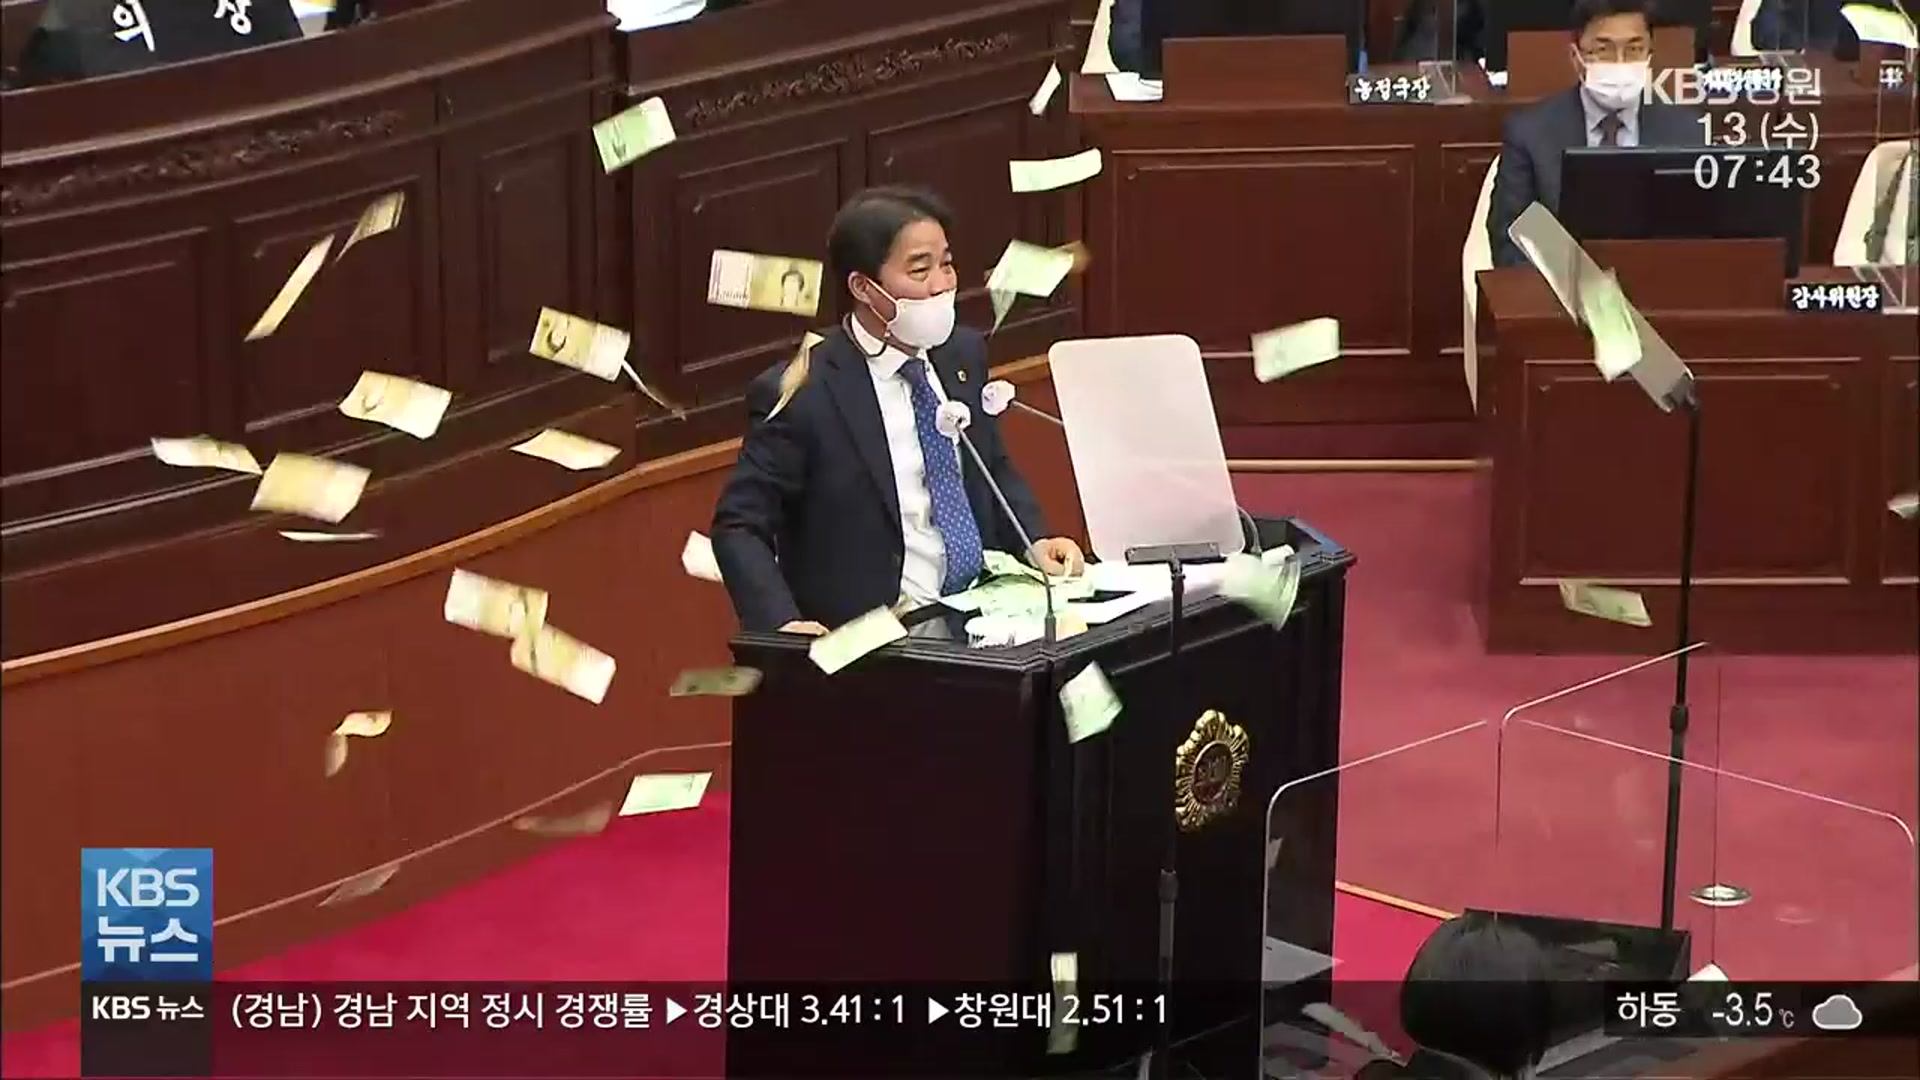 [영상] 경남도의회서 ‘200만 원 뿌려진’ 사연은?